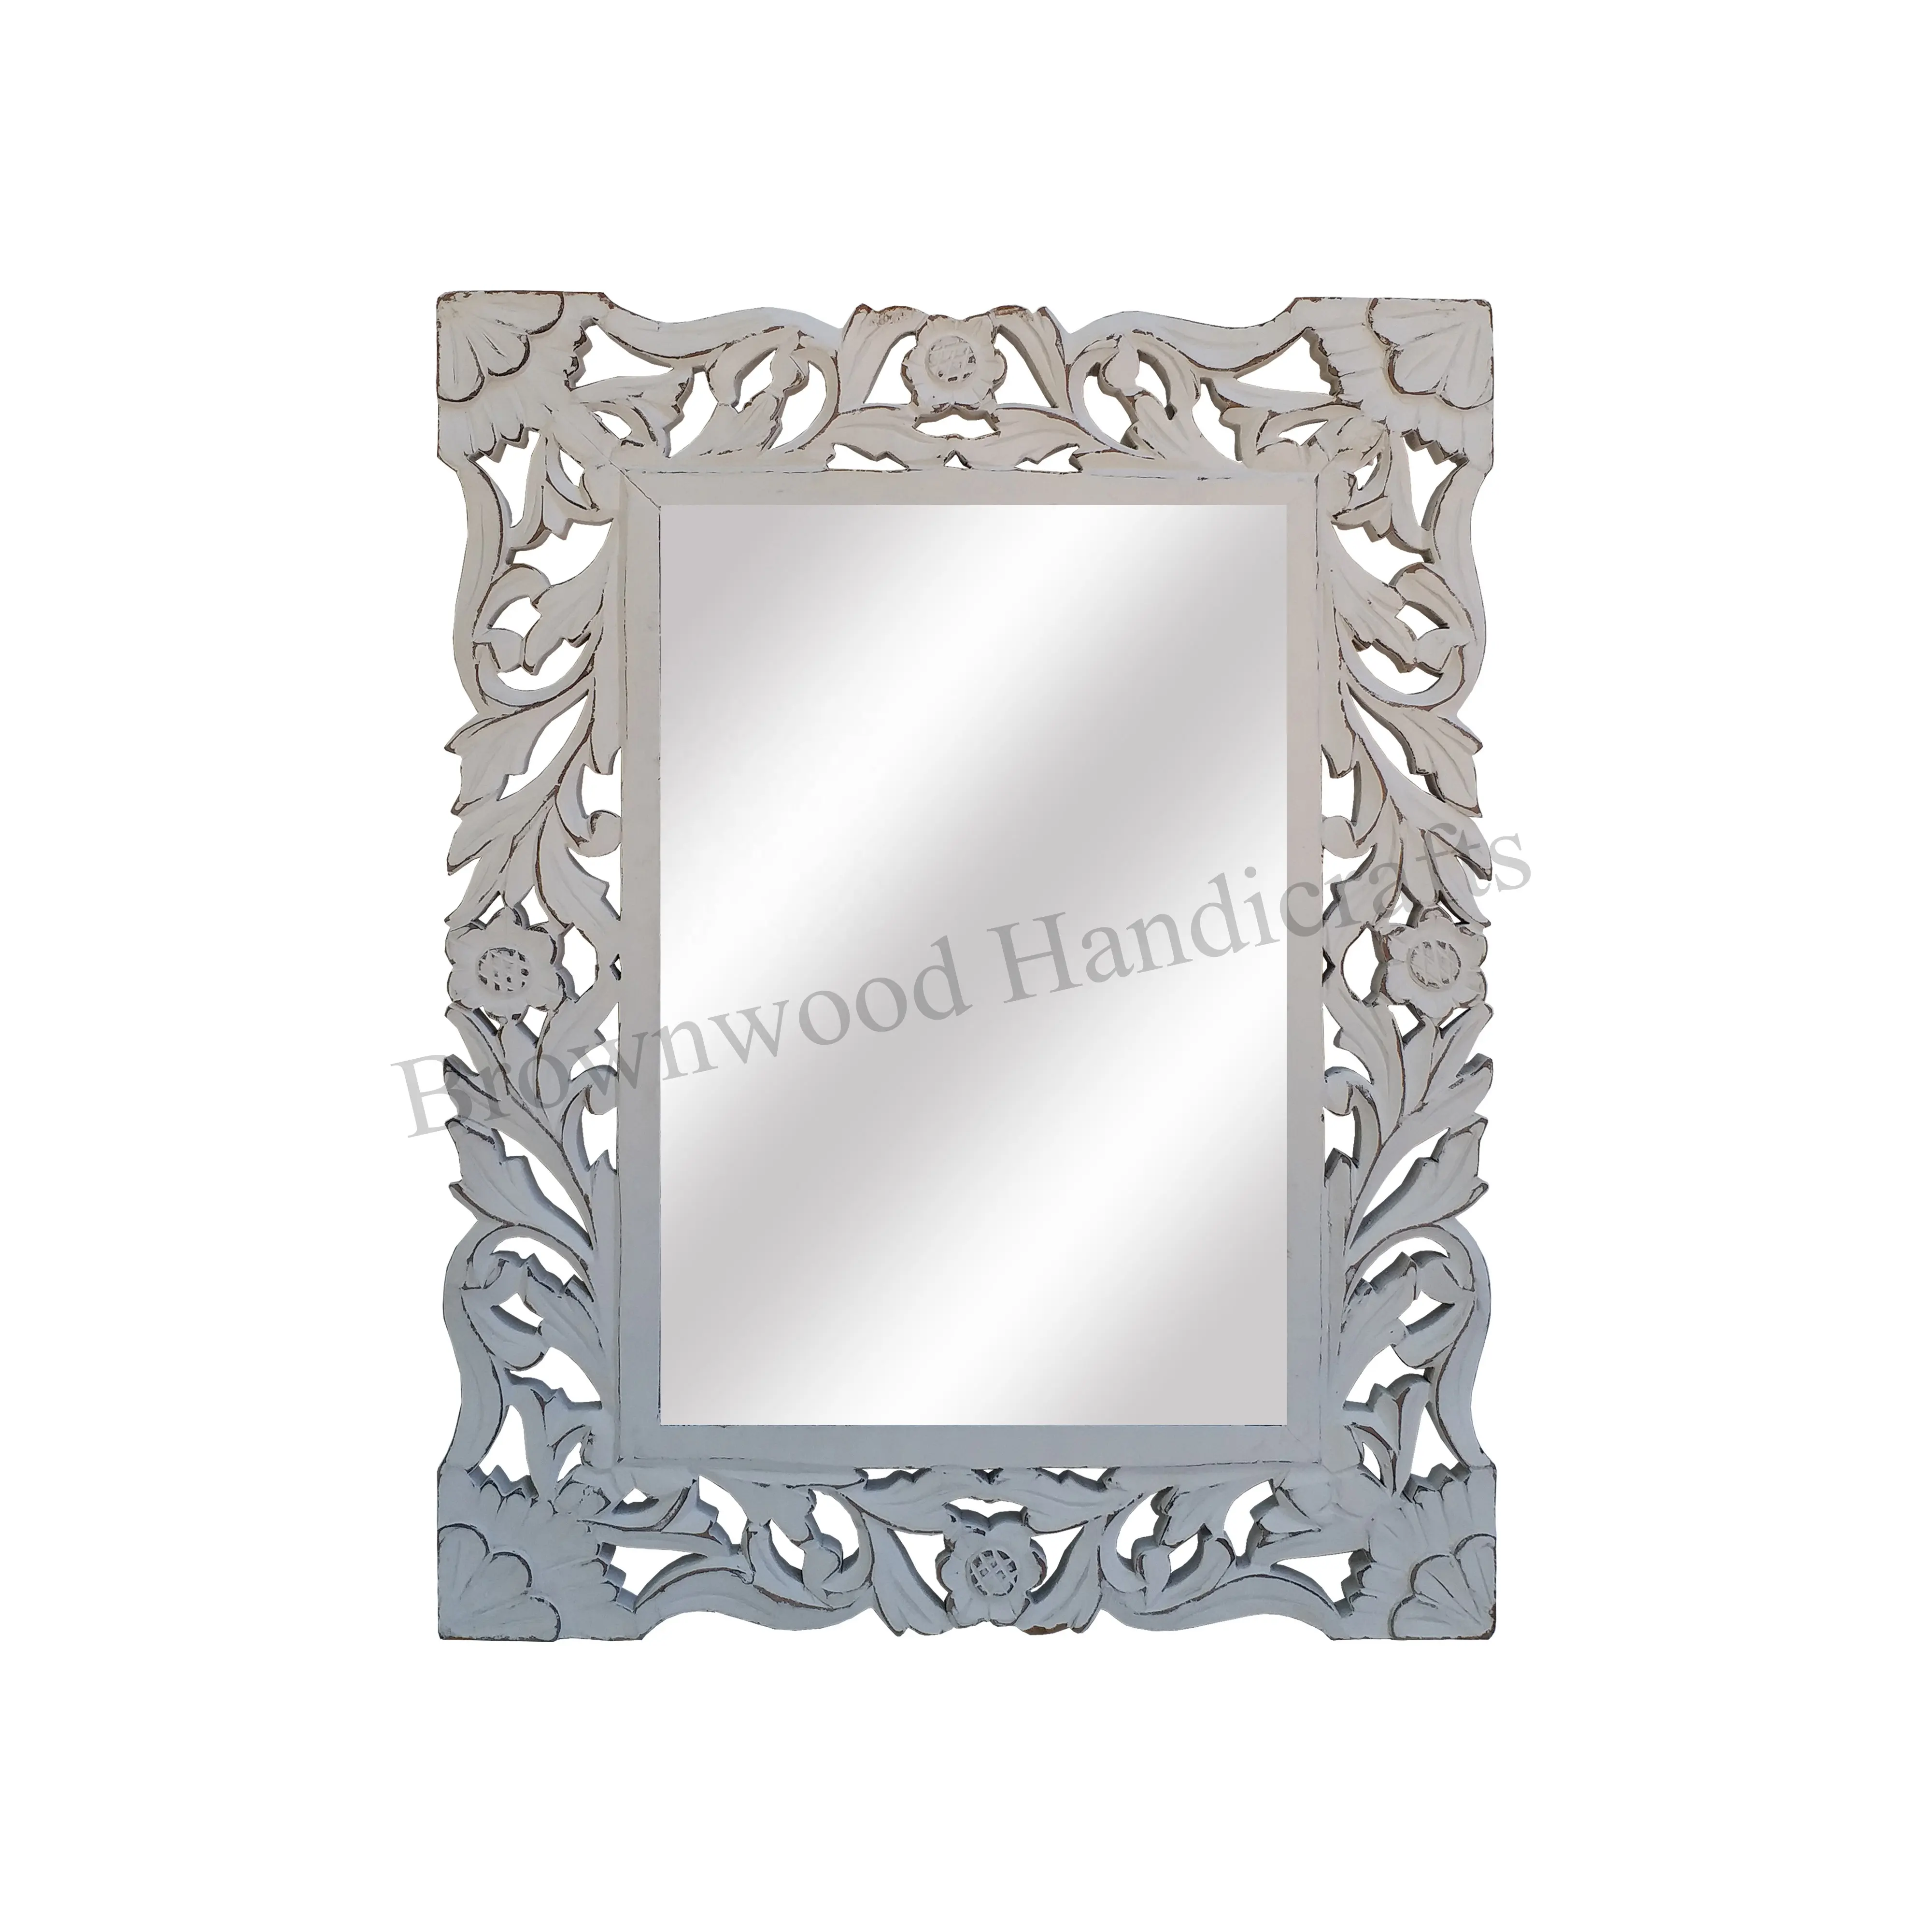 Cornice per specchio in legno MDF rettangolare dal Design antico di tendenza superiore per la decorazione della parete cornici per specchietti in legno intagliato floreale